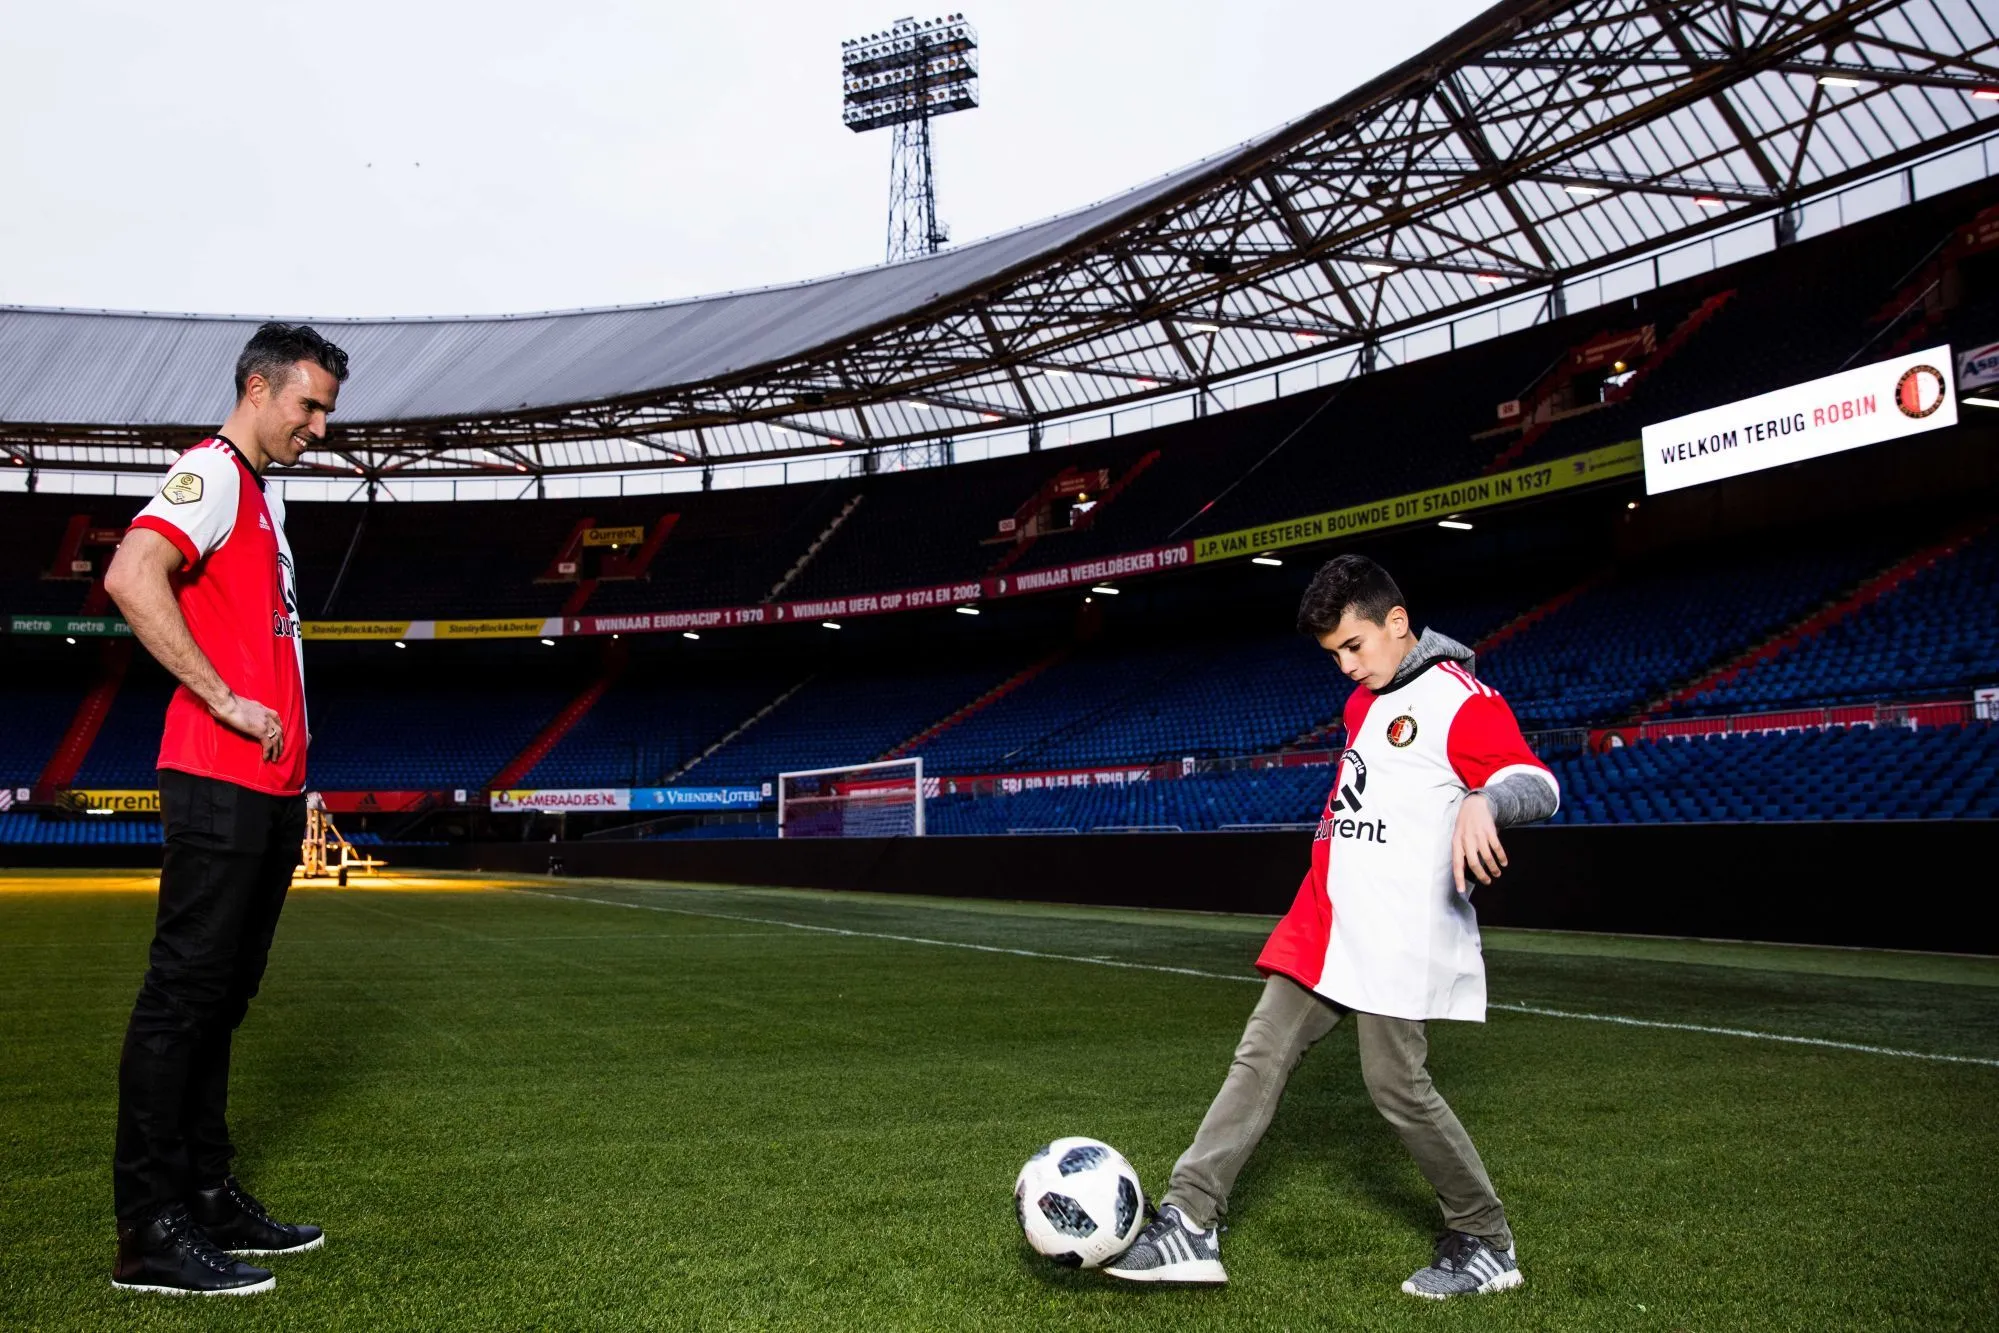 Le fils de Van Persie signe professionnel à Feyenoord